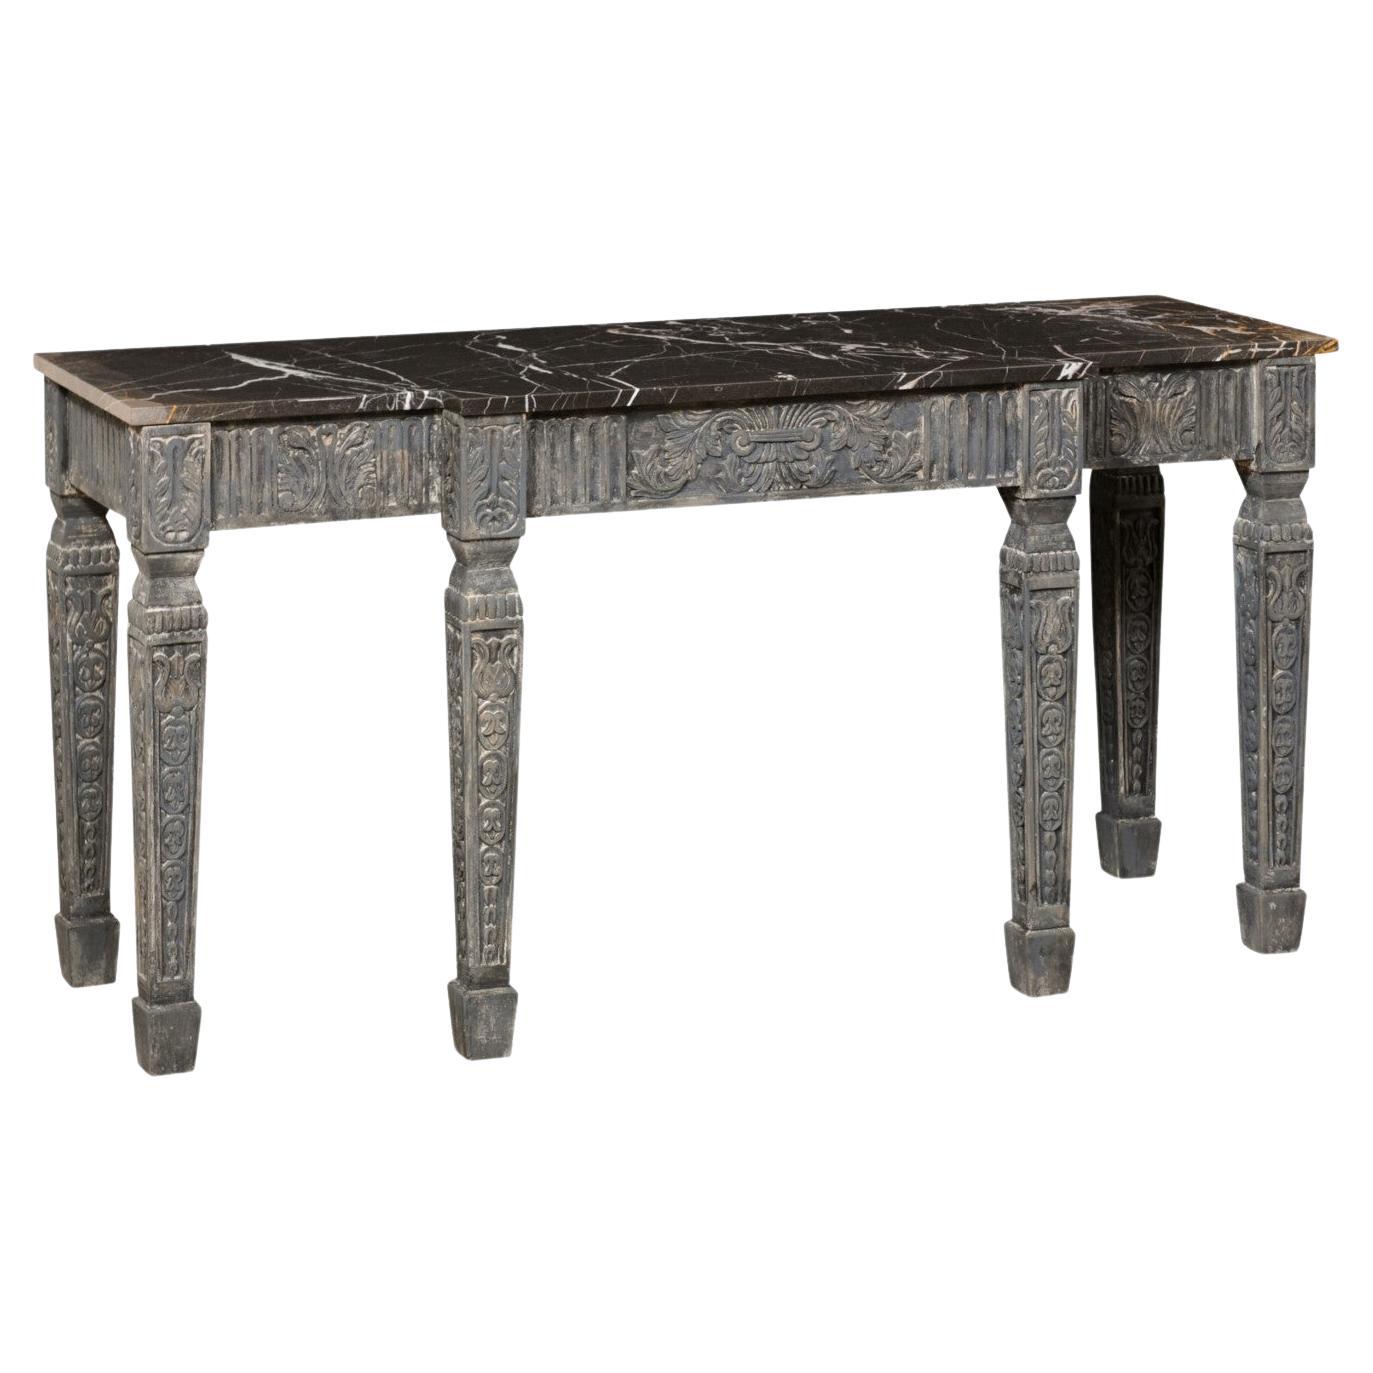 Table console française sculptée avec plateau en marbre et façade peu profonde